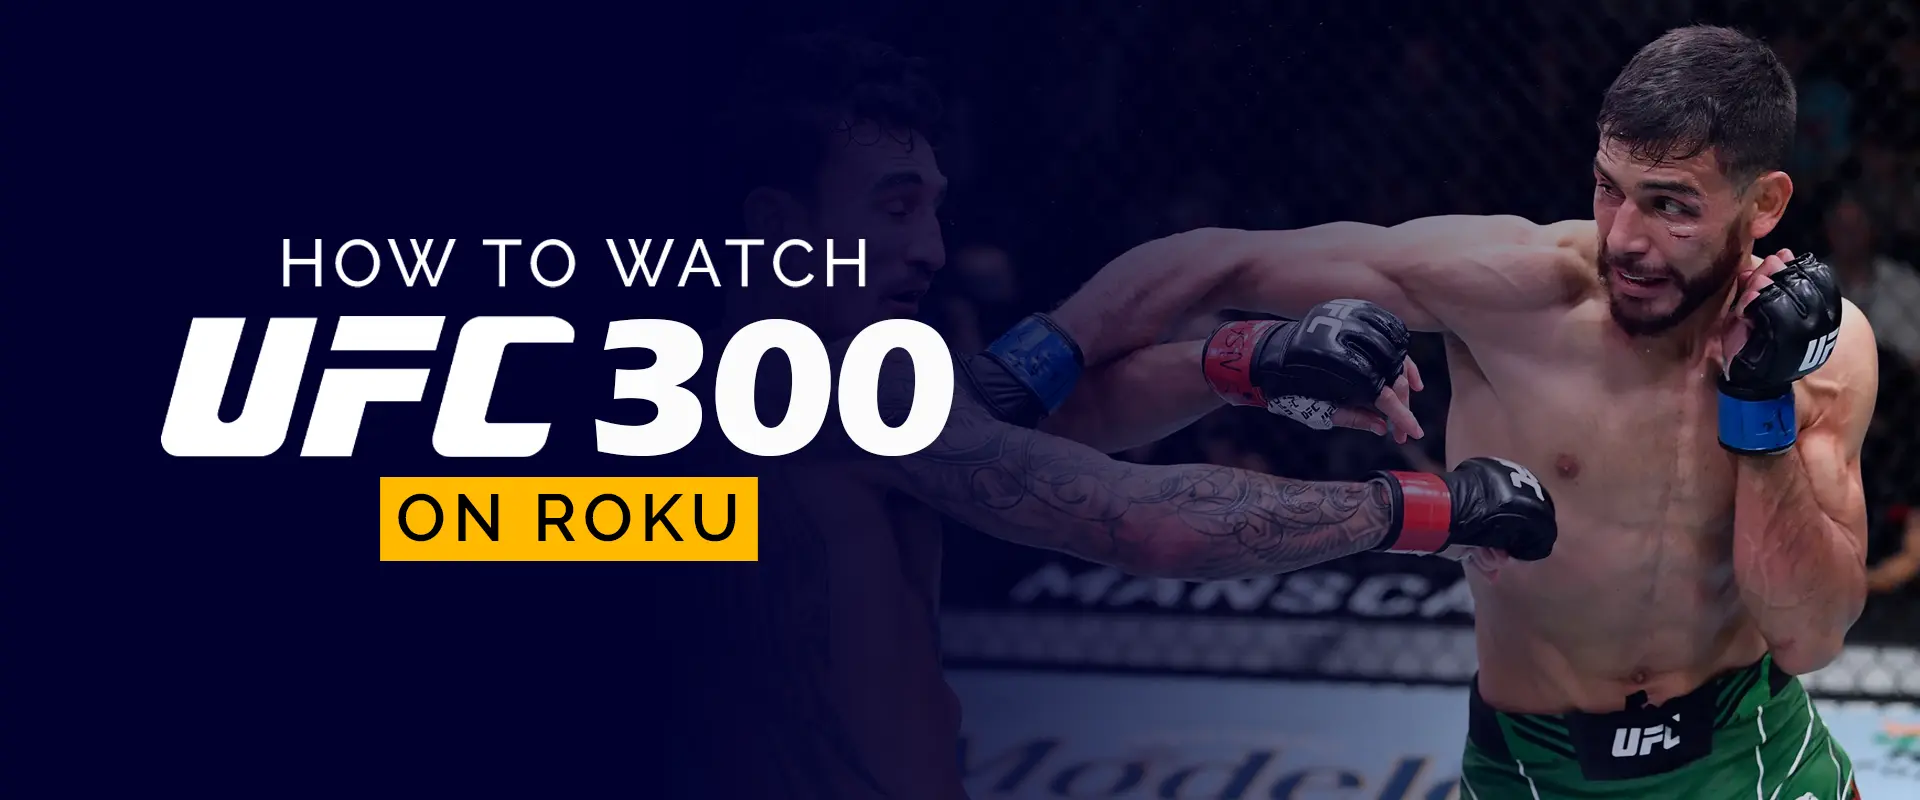 Как смотреть UFC 300 на Roku